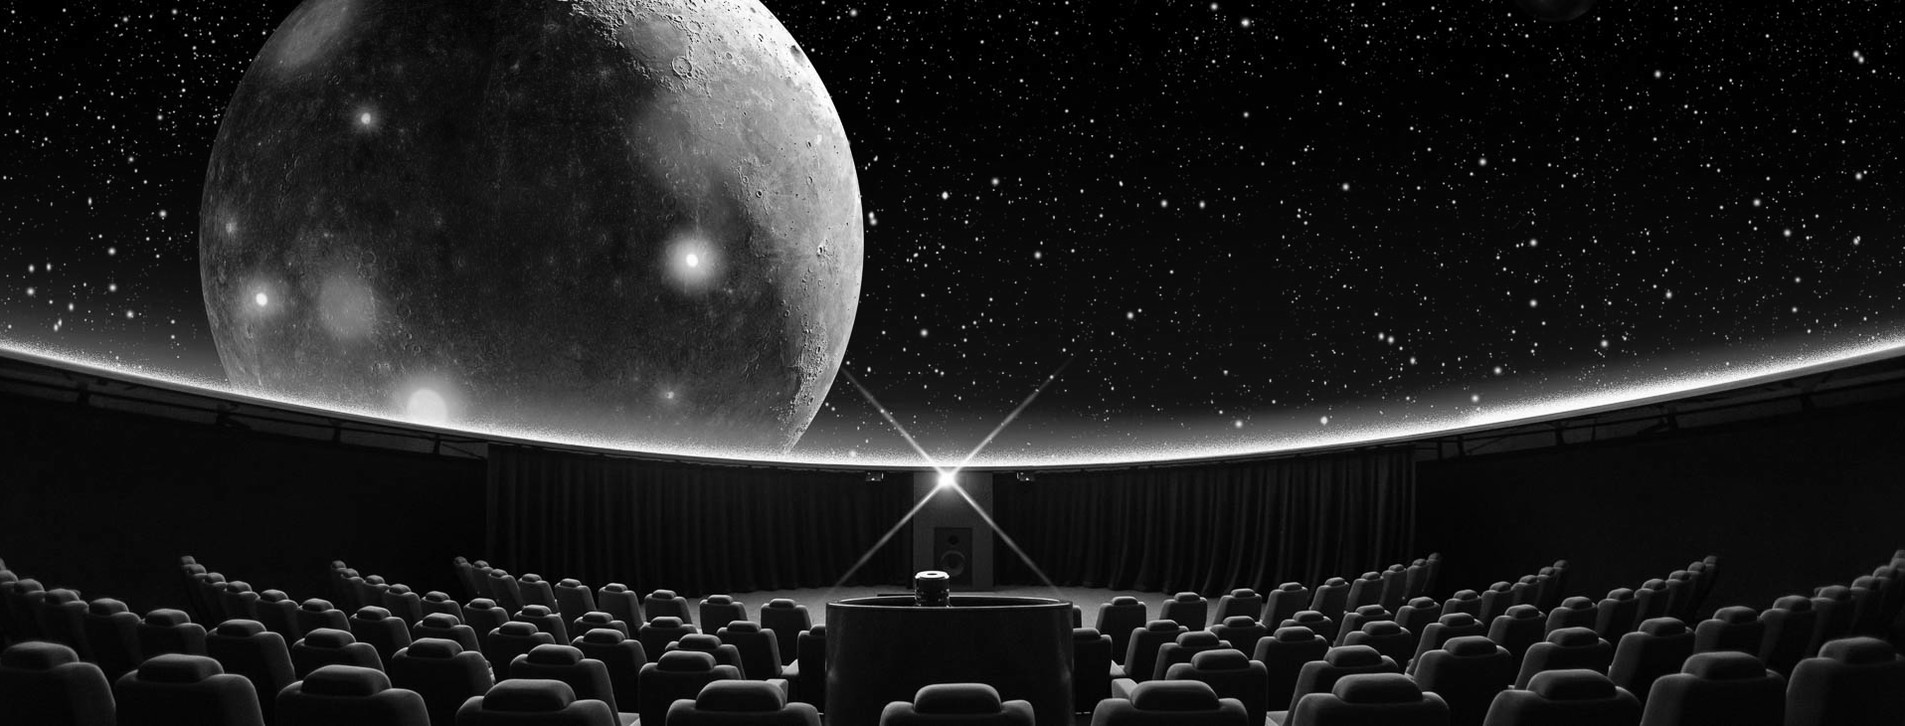 Фото 1 - Сферический кинотеатр для компании